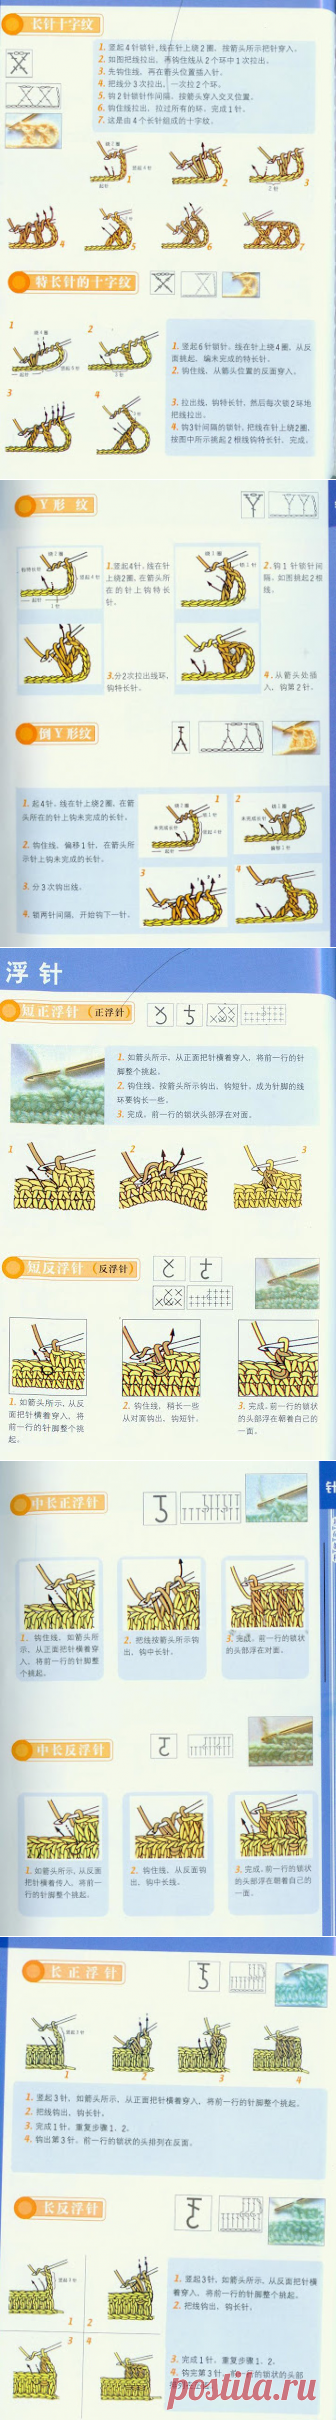 Инструкция по японским условным обозначениям в вязании крючком.